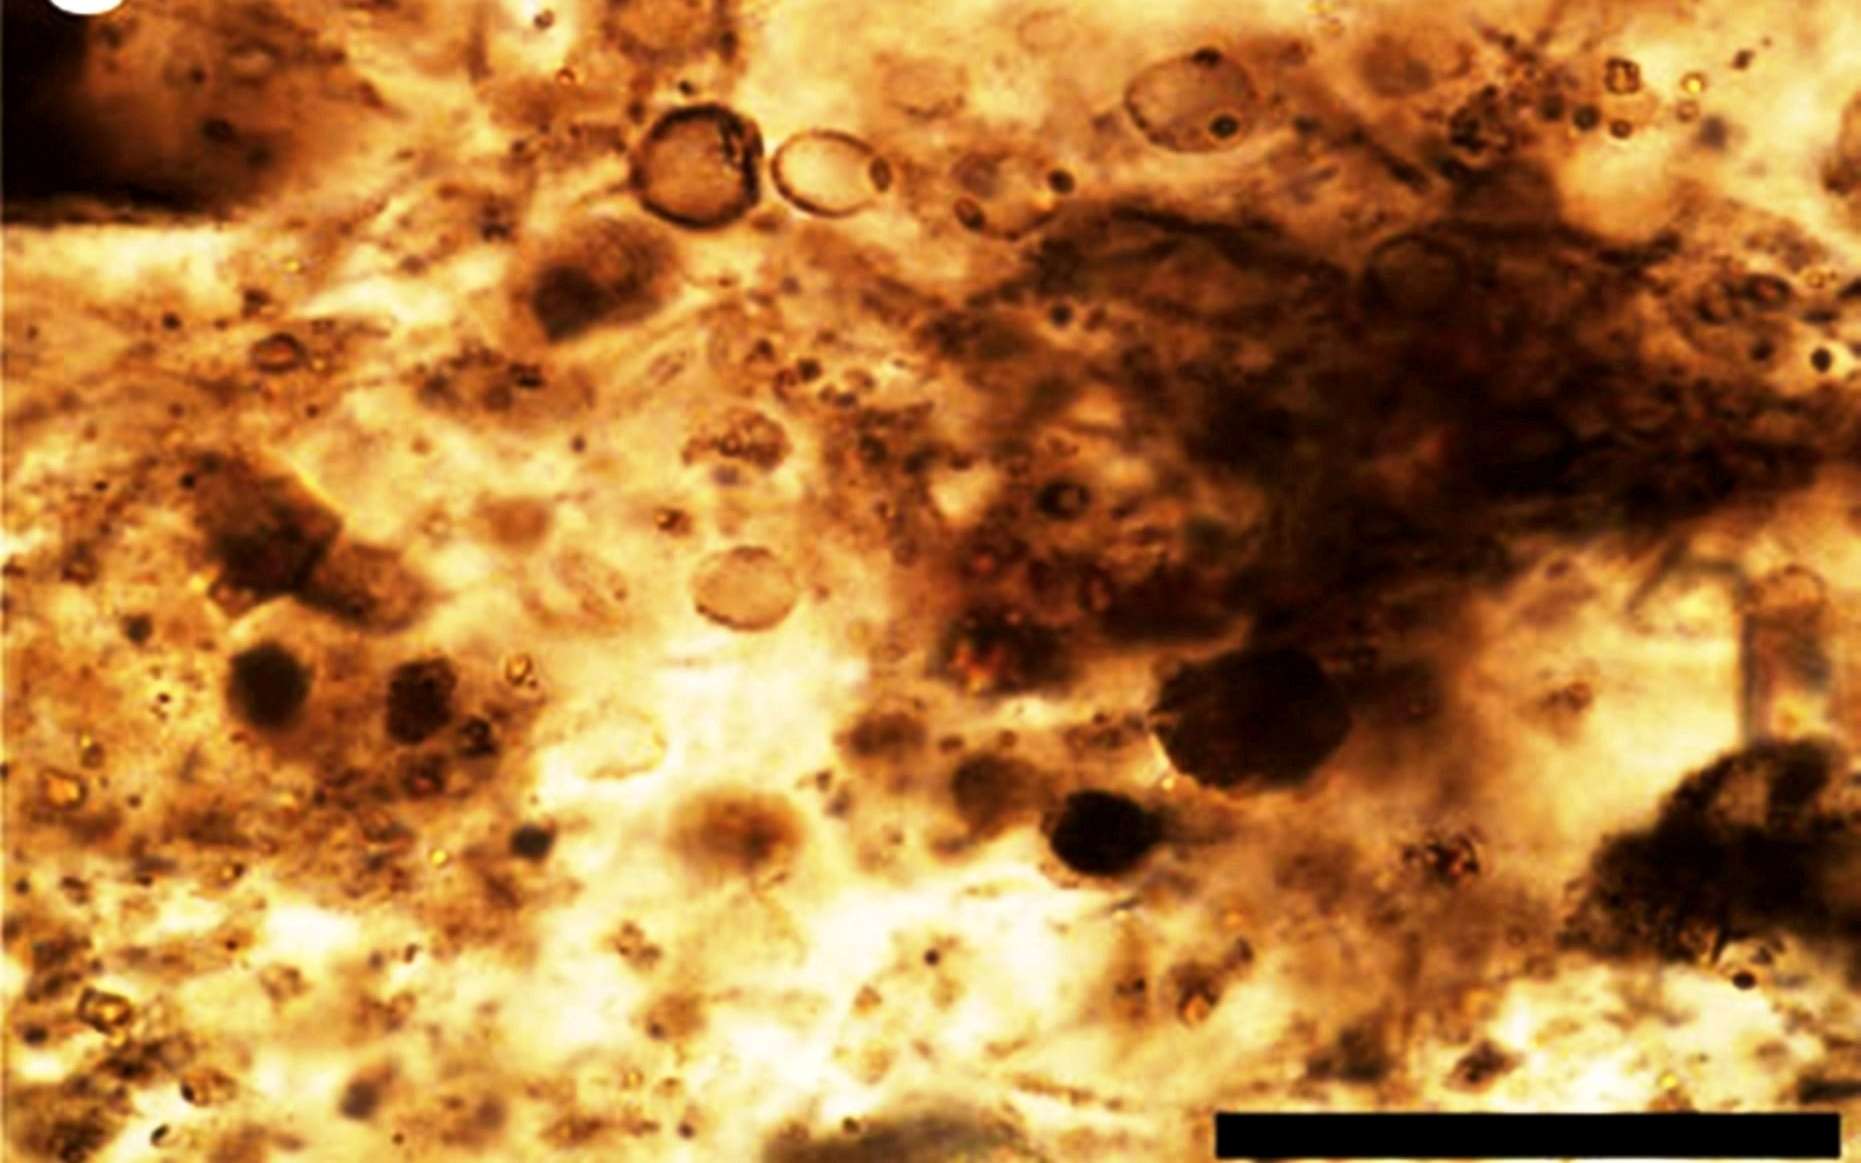 Cette lame mince provenant d'une roche de la formation de Gunflint contient plusieurs microfossiles. À l'intérieur, des fragments de protéines... La barre noire correspond à une échelle de 50 microns. © Nature